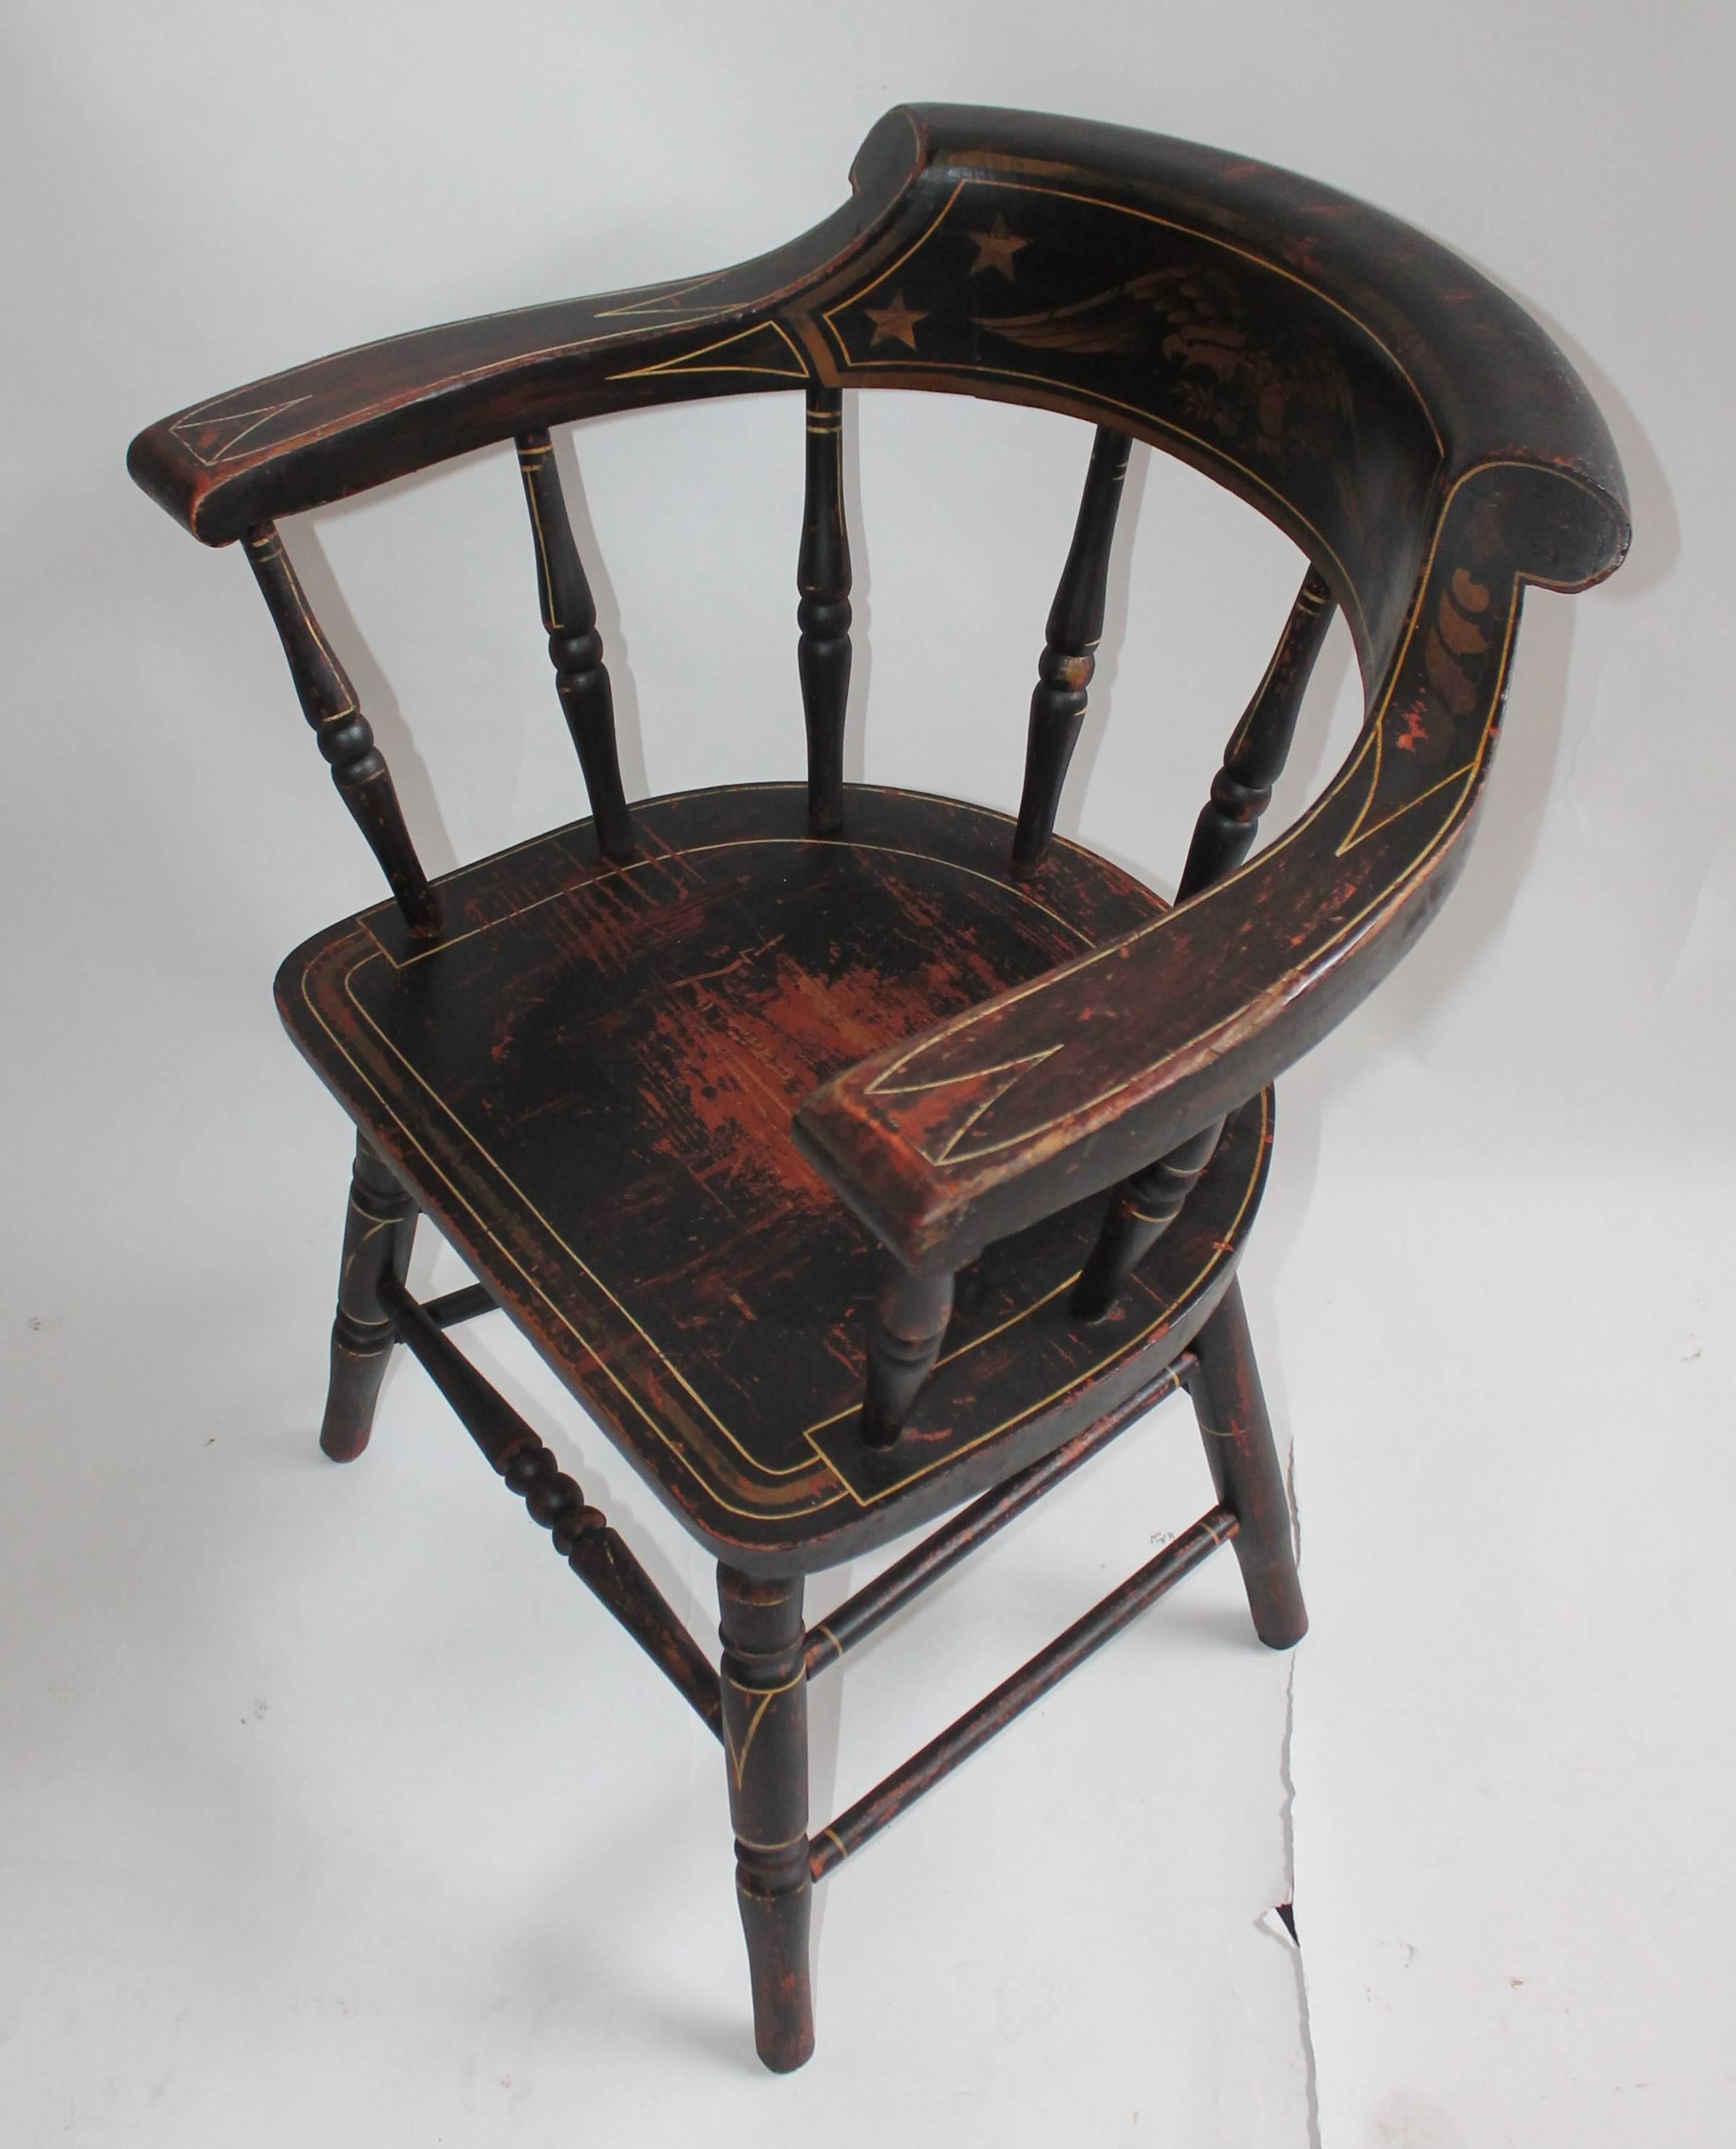 Diese erstaunliche alle ursprünglichen gemalt und dekoriert See-Kapitäne Stuhl aus New England. Dieser Stuhl hat die ursprüngliche vergoldete Oberfläche und einen rot lackierten Sockel. Dieser Dielenstuhl ist in einem sehr guten und stabilen